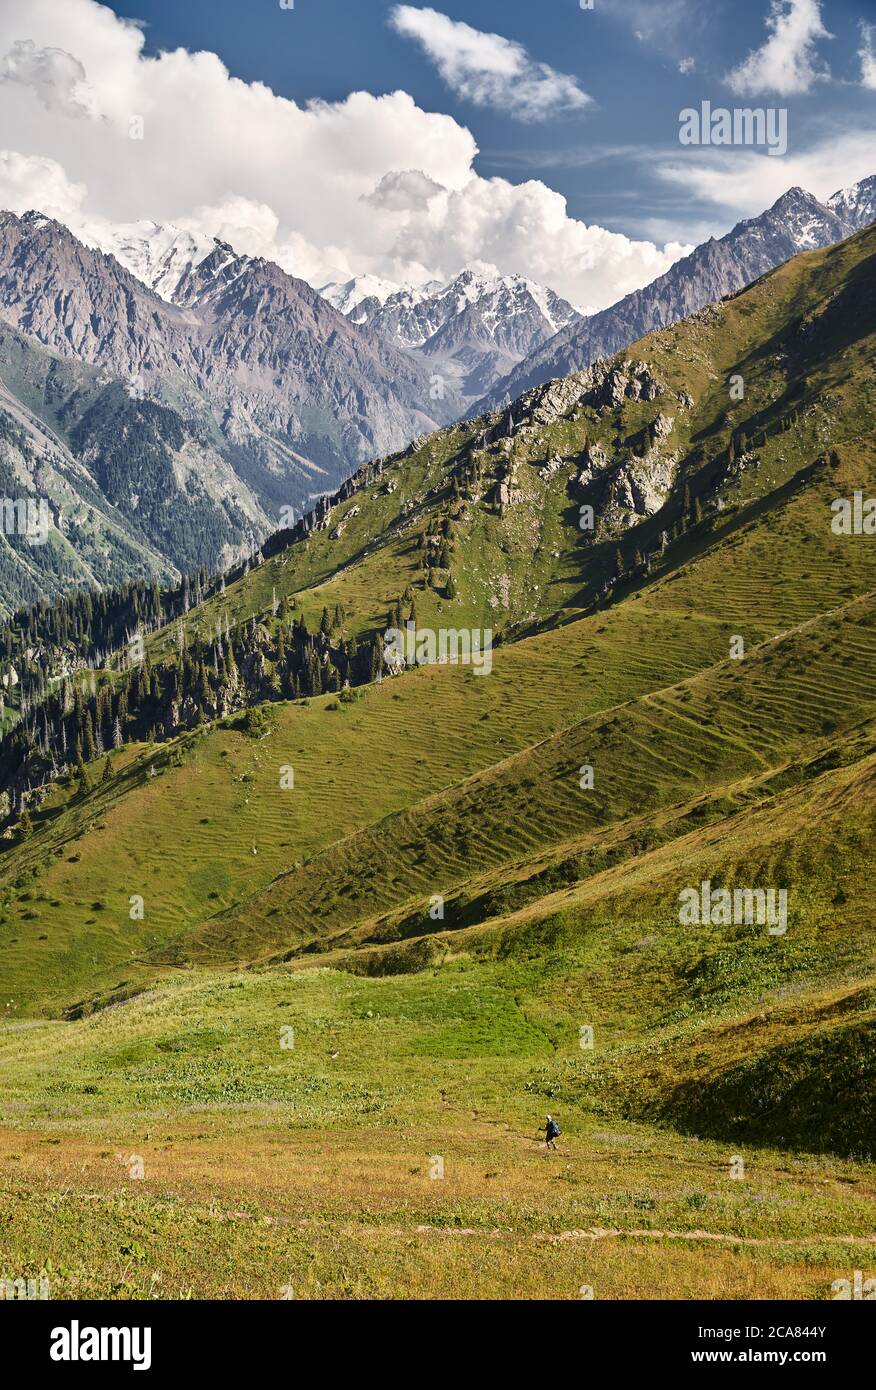 Petite promenade touristique sur une colline verdoyante dans la vallée de la montagne avec de hauts sommets enneigés Banque D'Images